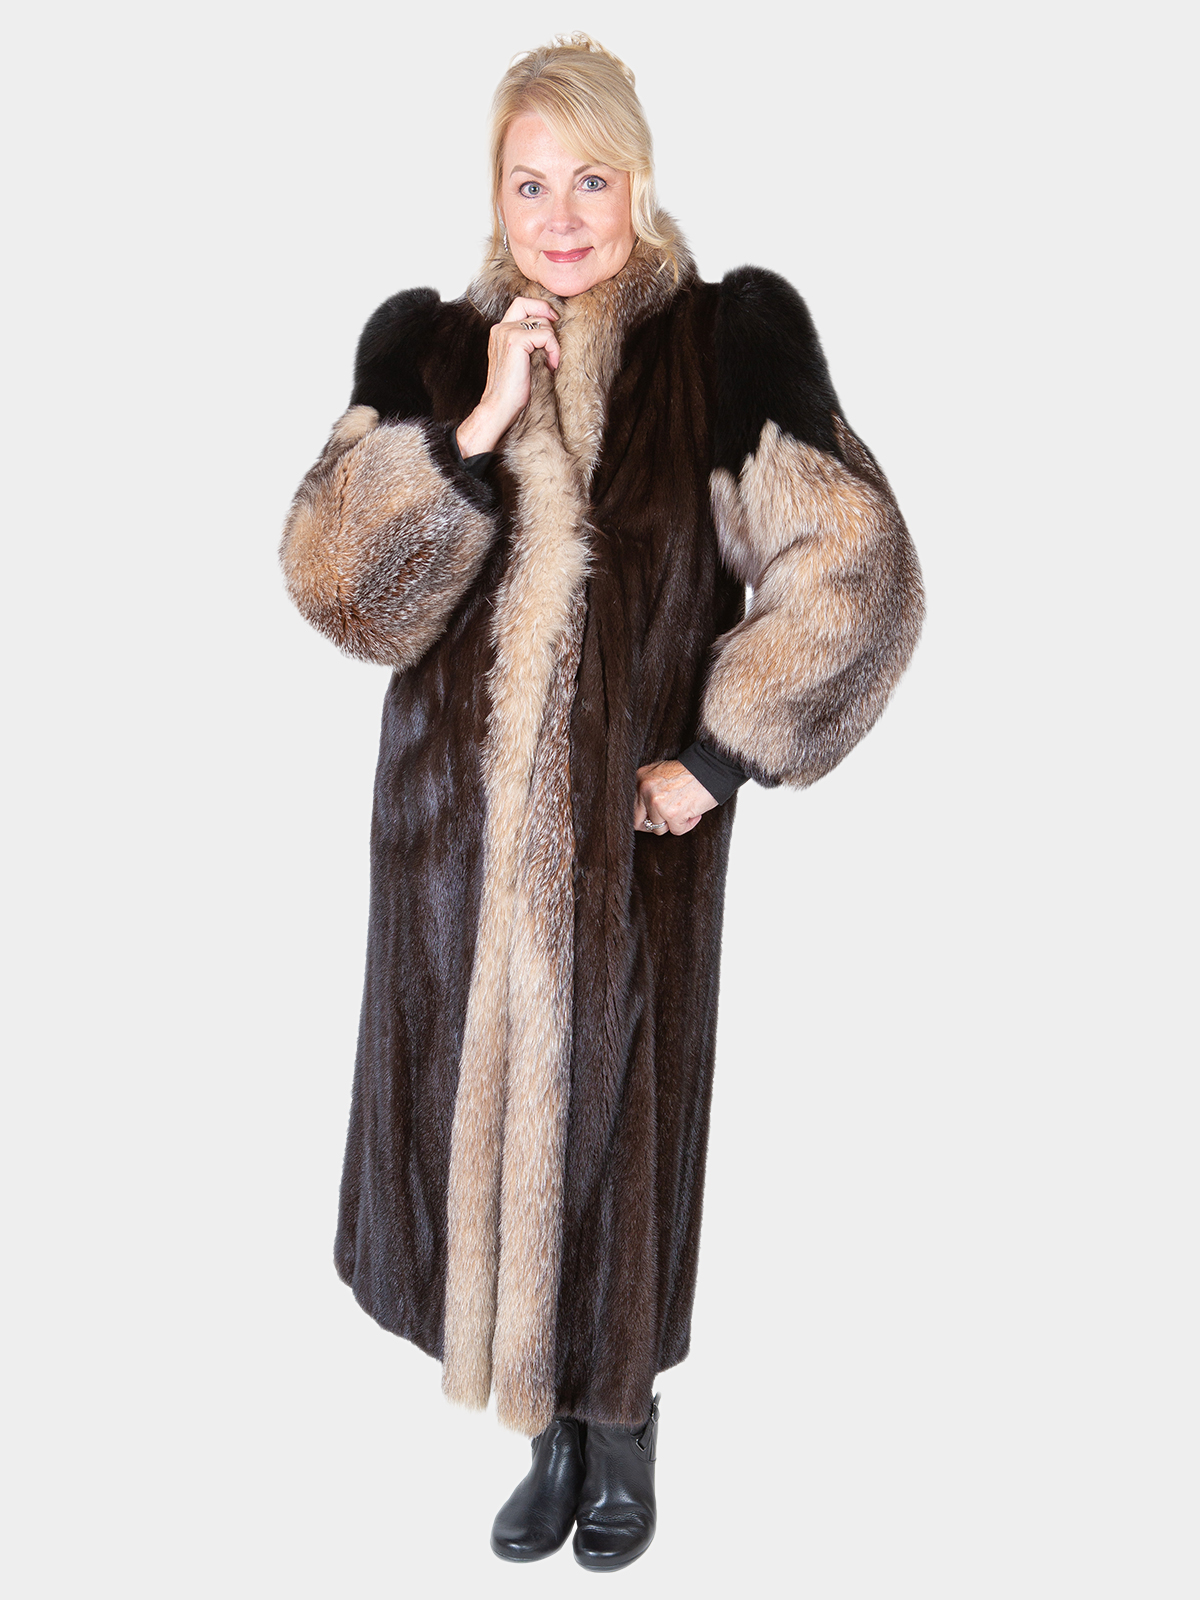 Long Mink Faux Fur Coat (2colors)